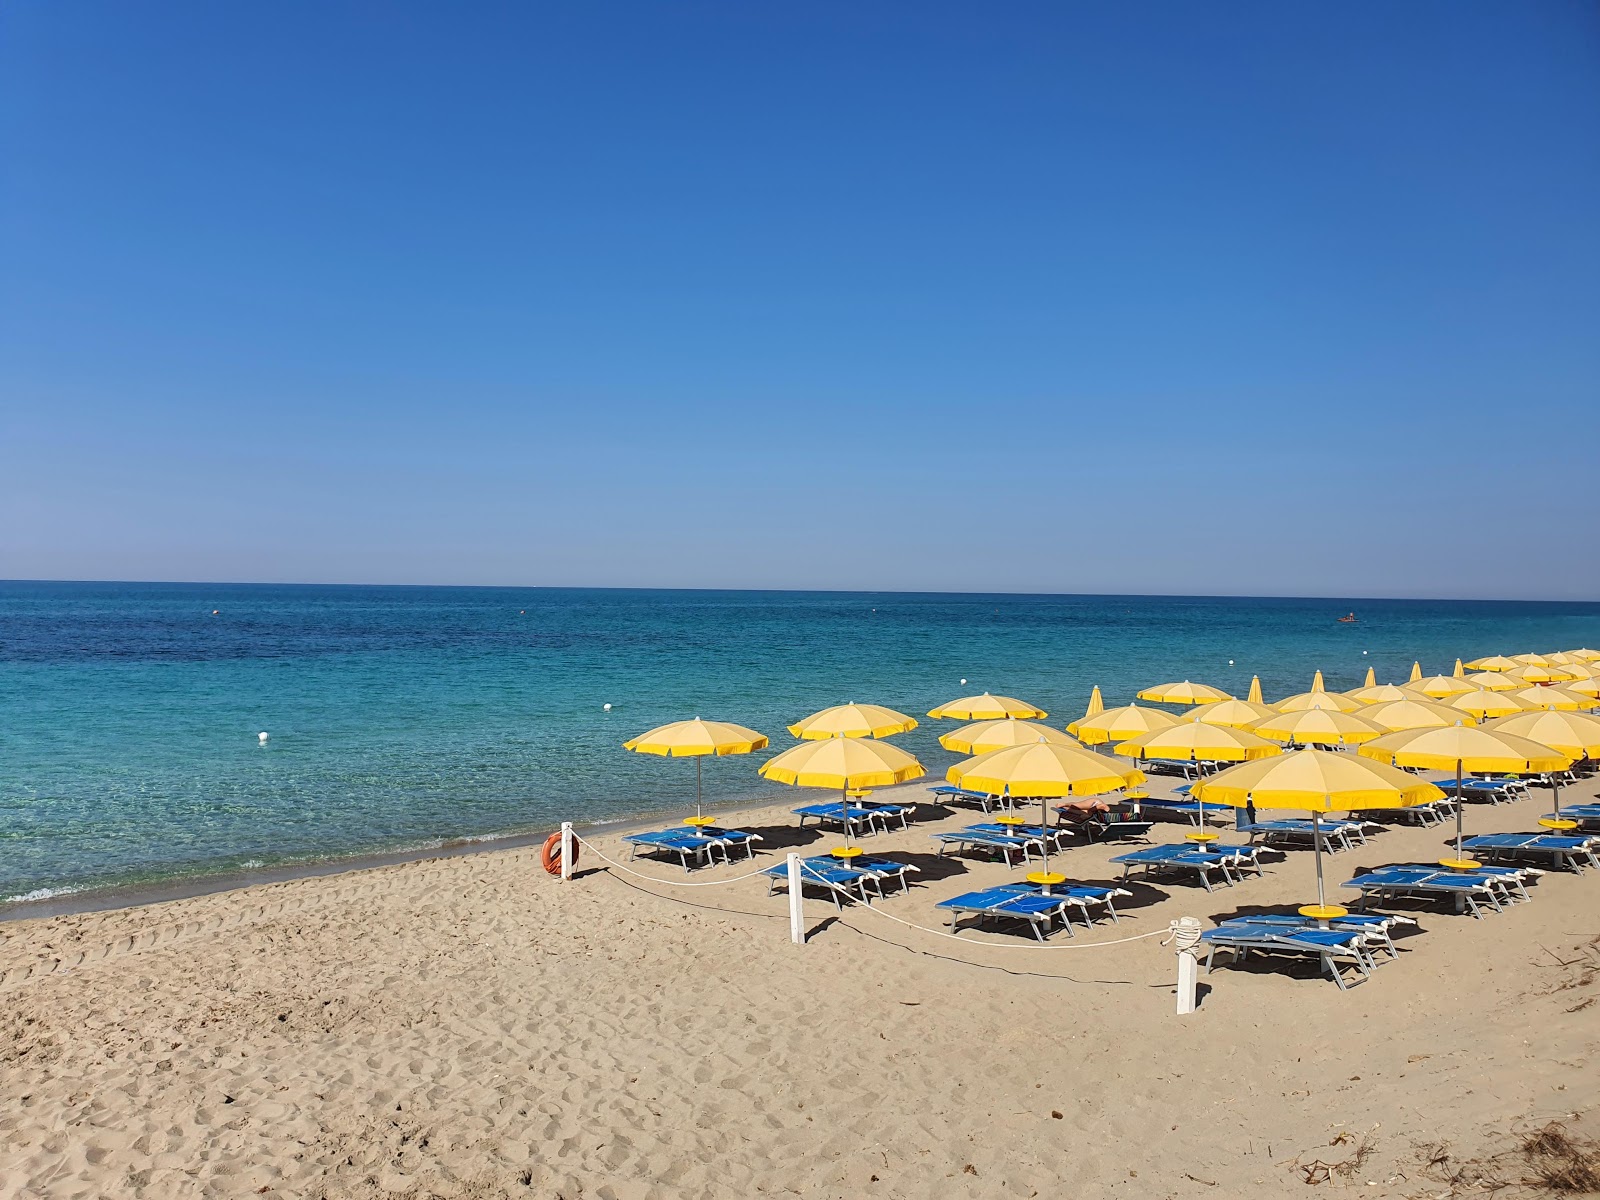 Foto von Spiaggia di Torre Mozza mit langer gerader strand